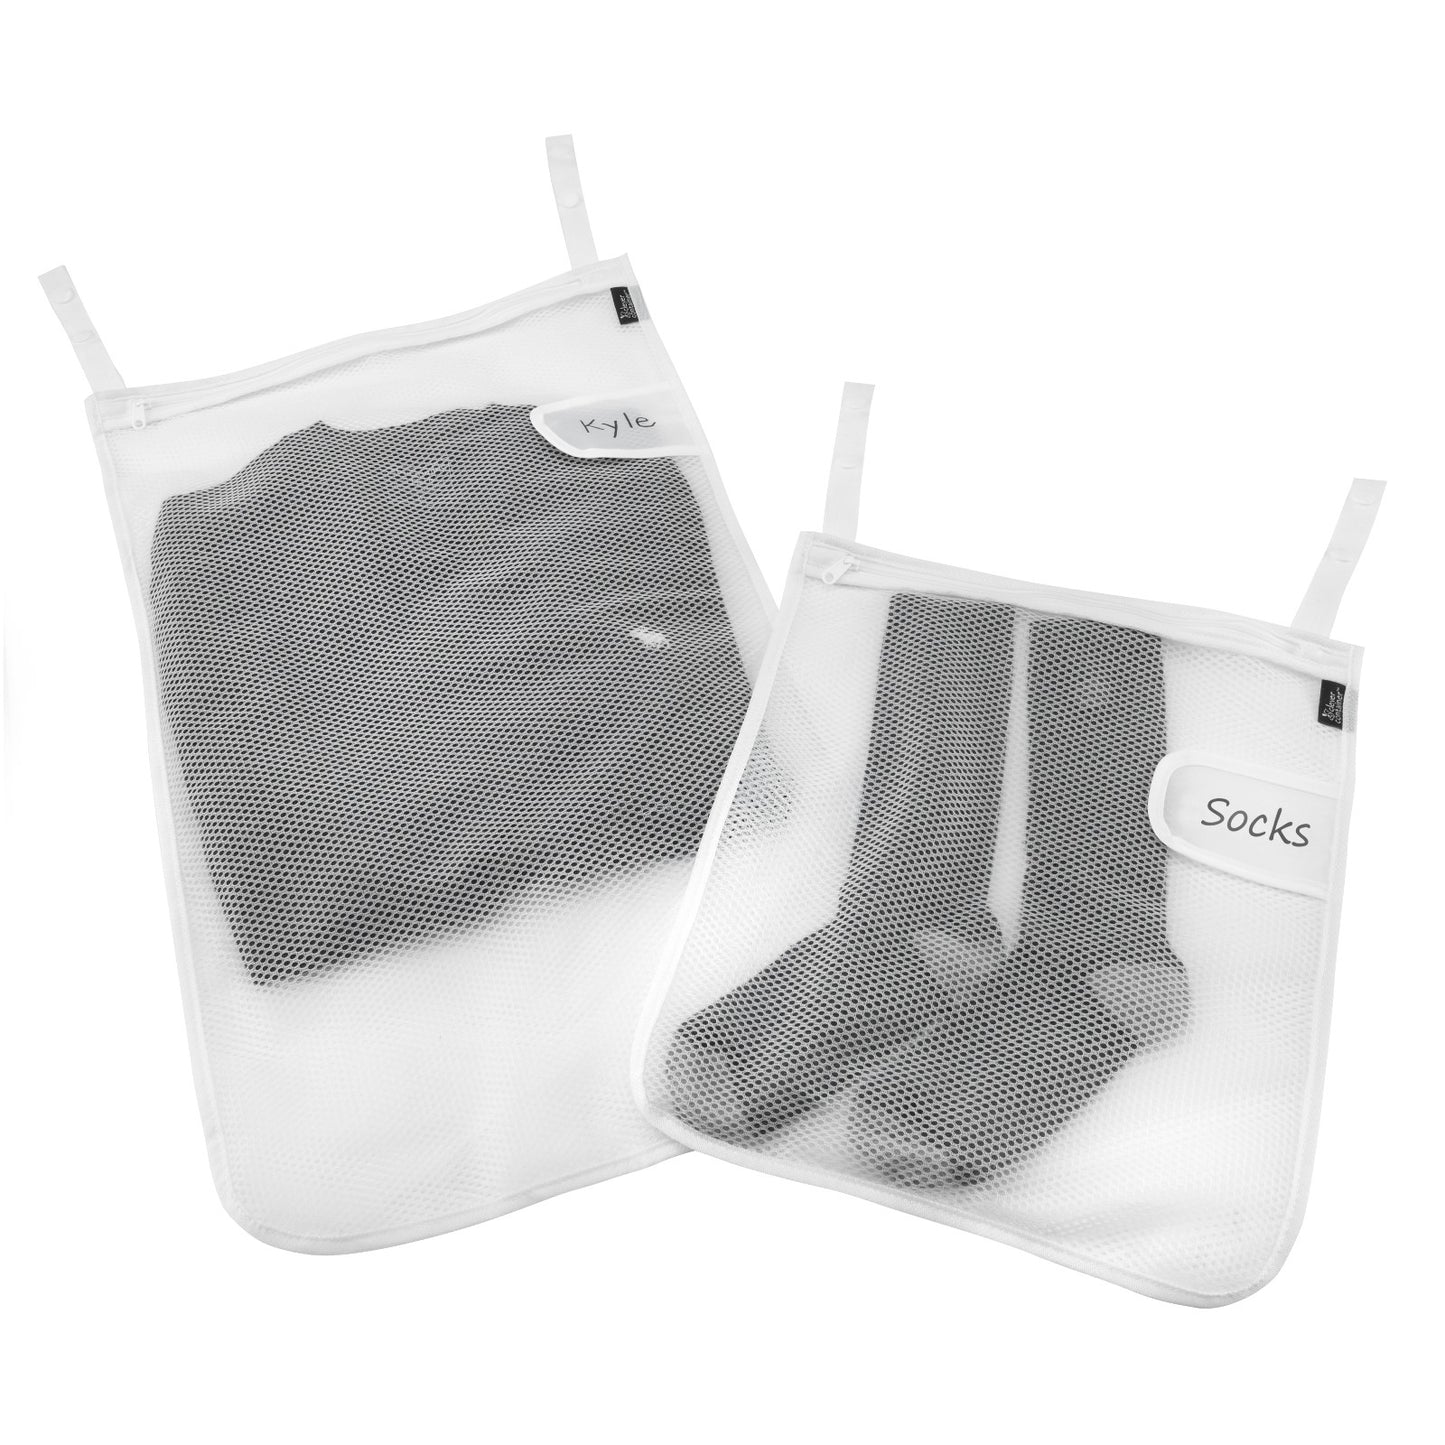 Mesh Wash Bags - Set of 2  + Mesh Sneaker Bag - Better Together Bundle